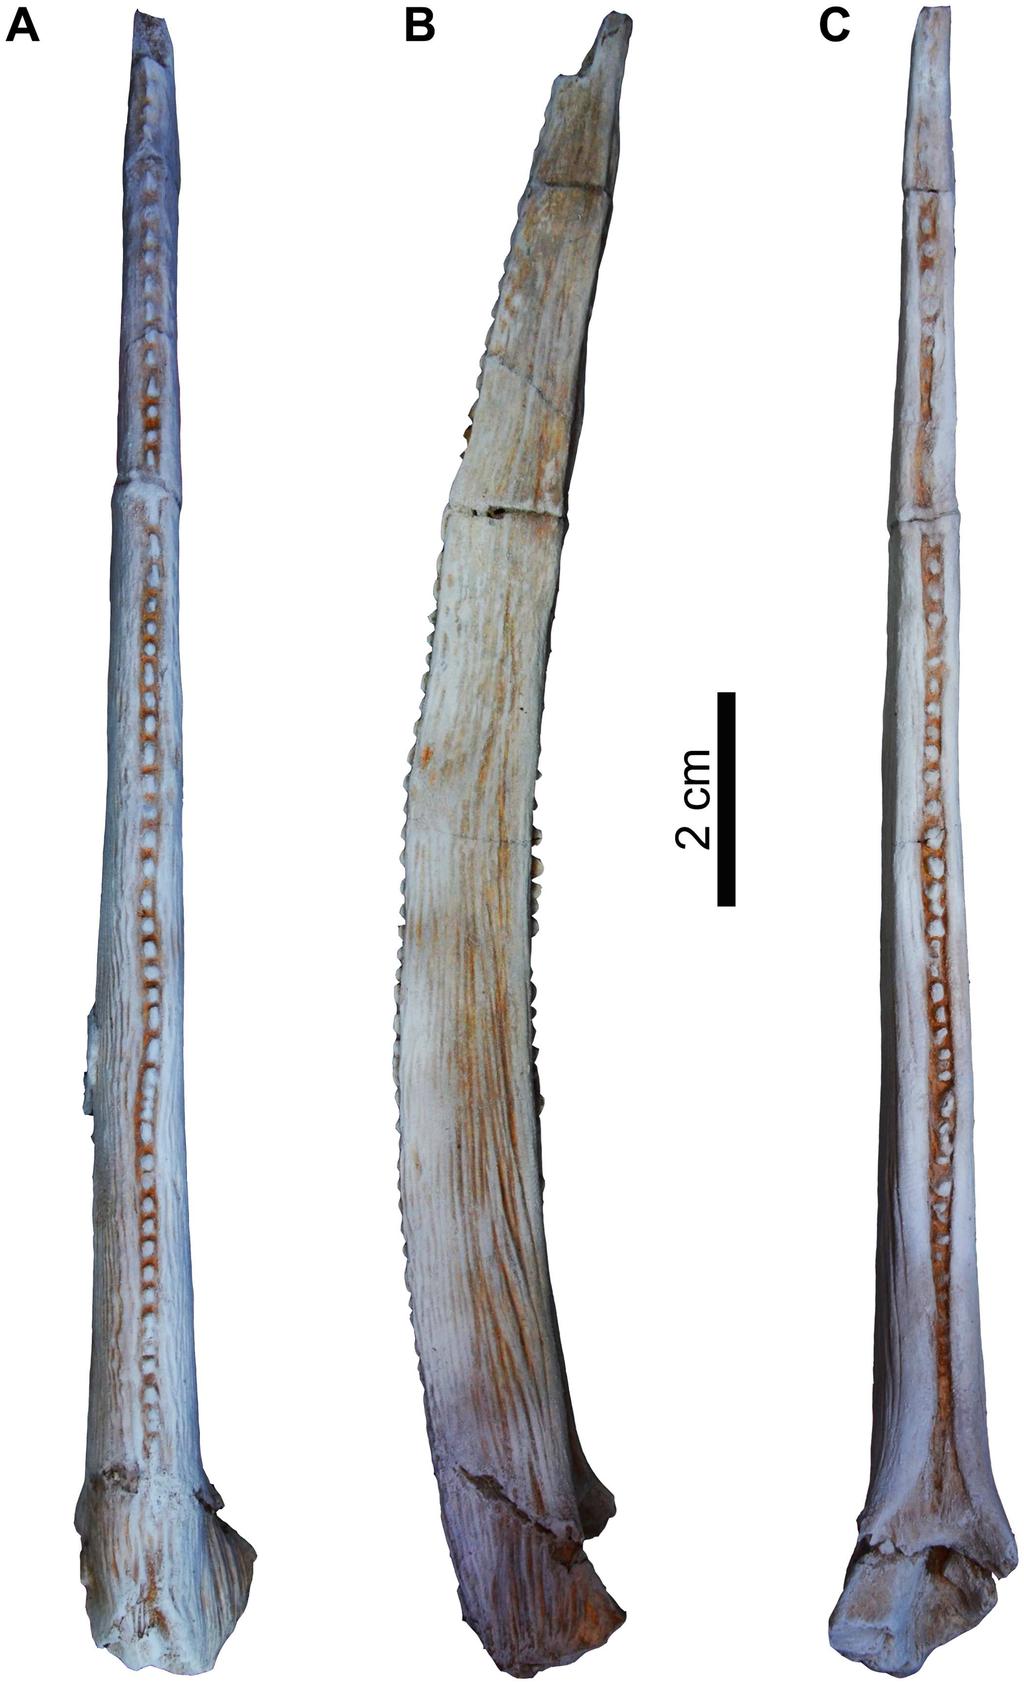 Fig 11. Left pectoral girdle spine of Qarmoutus hitanensis gen. et sp. nov. A, Anterior; B, Ventral and C, Posterior views. doi:10.1371/journal.pone.0172409.